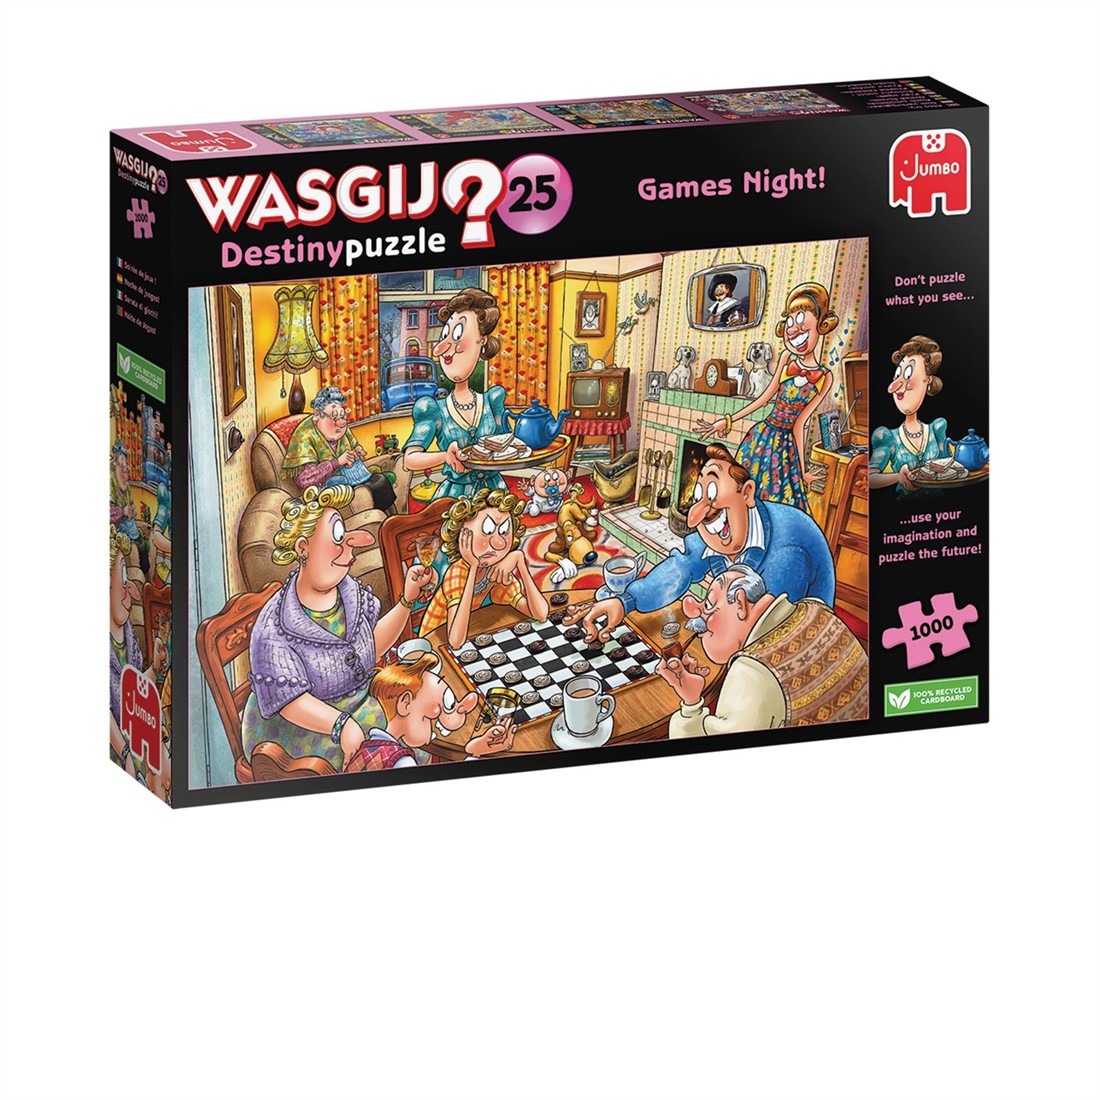 herten Respectvol zal ik doen Wasgij Destiny 25 - Spelletjesavond Puzzel (1000 stukjes) - kopen bij  Spellenrijk.nl